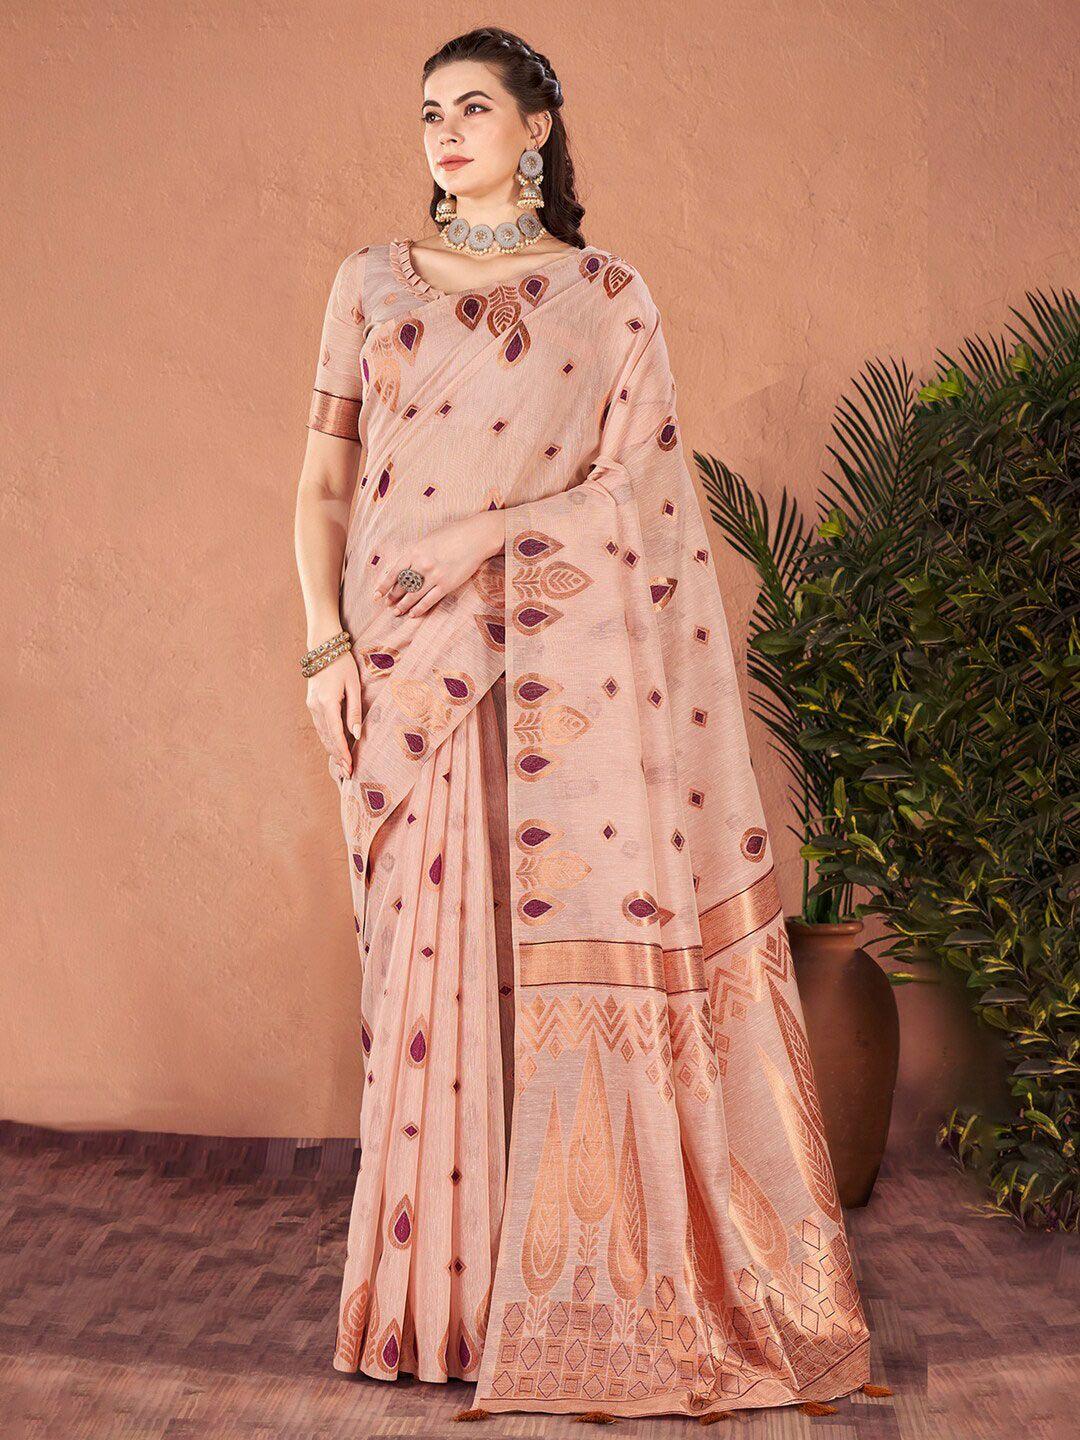 mitera rose gold ethnic motifs designer banarasi saree